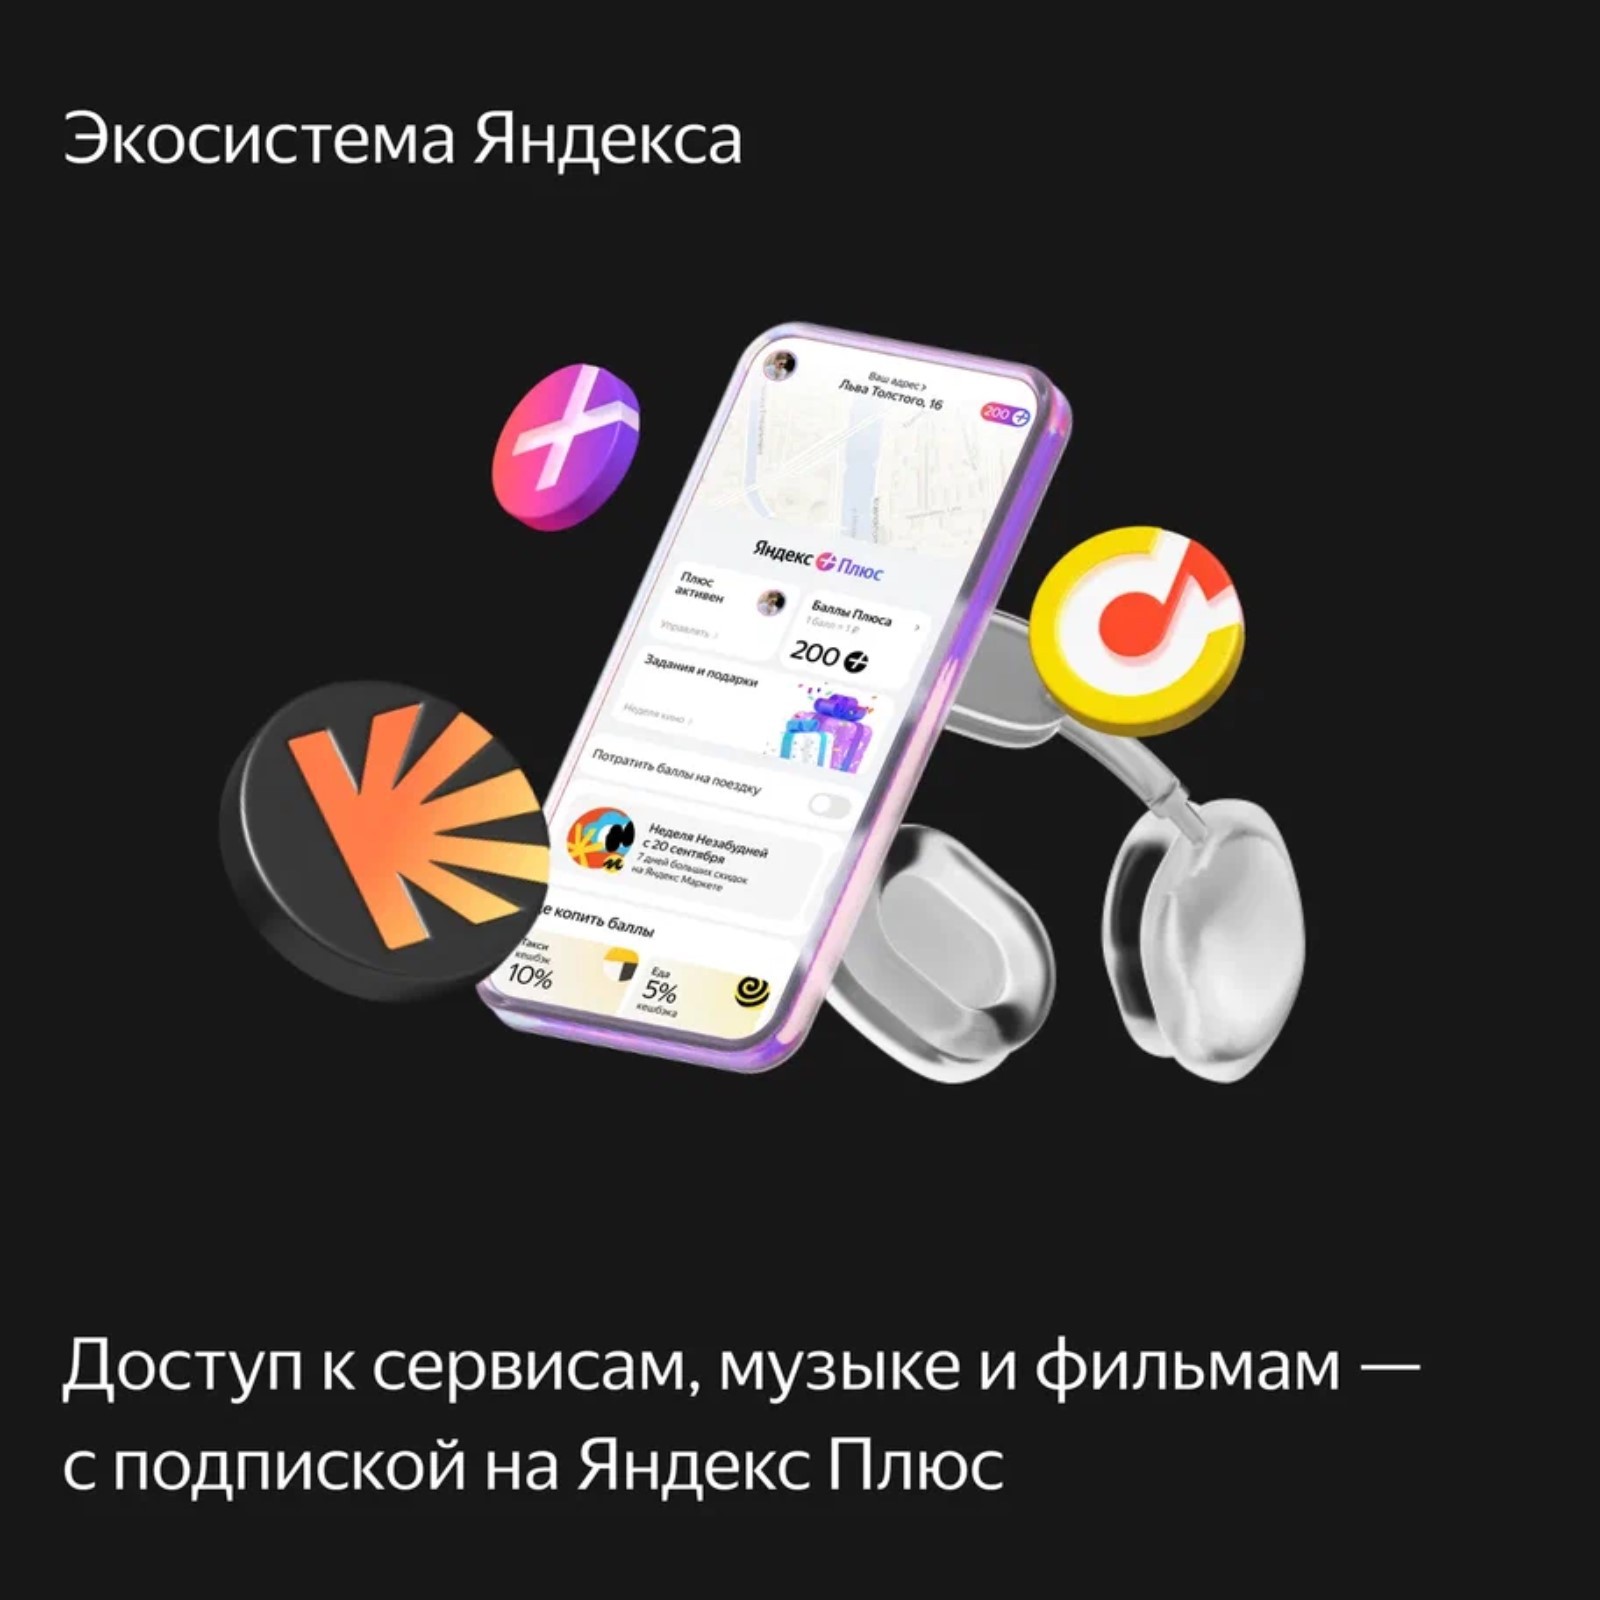 Доступ к сервисам, музыке и фильмам с подпиской на Яндекс Плюс